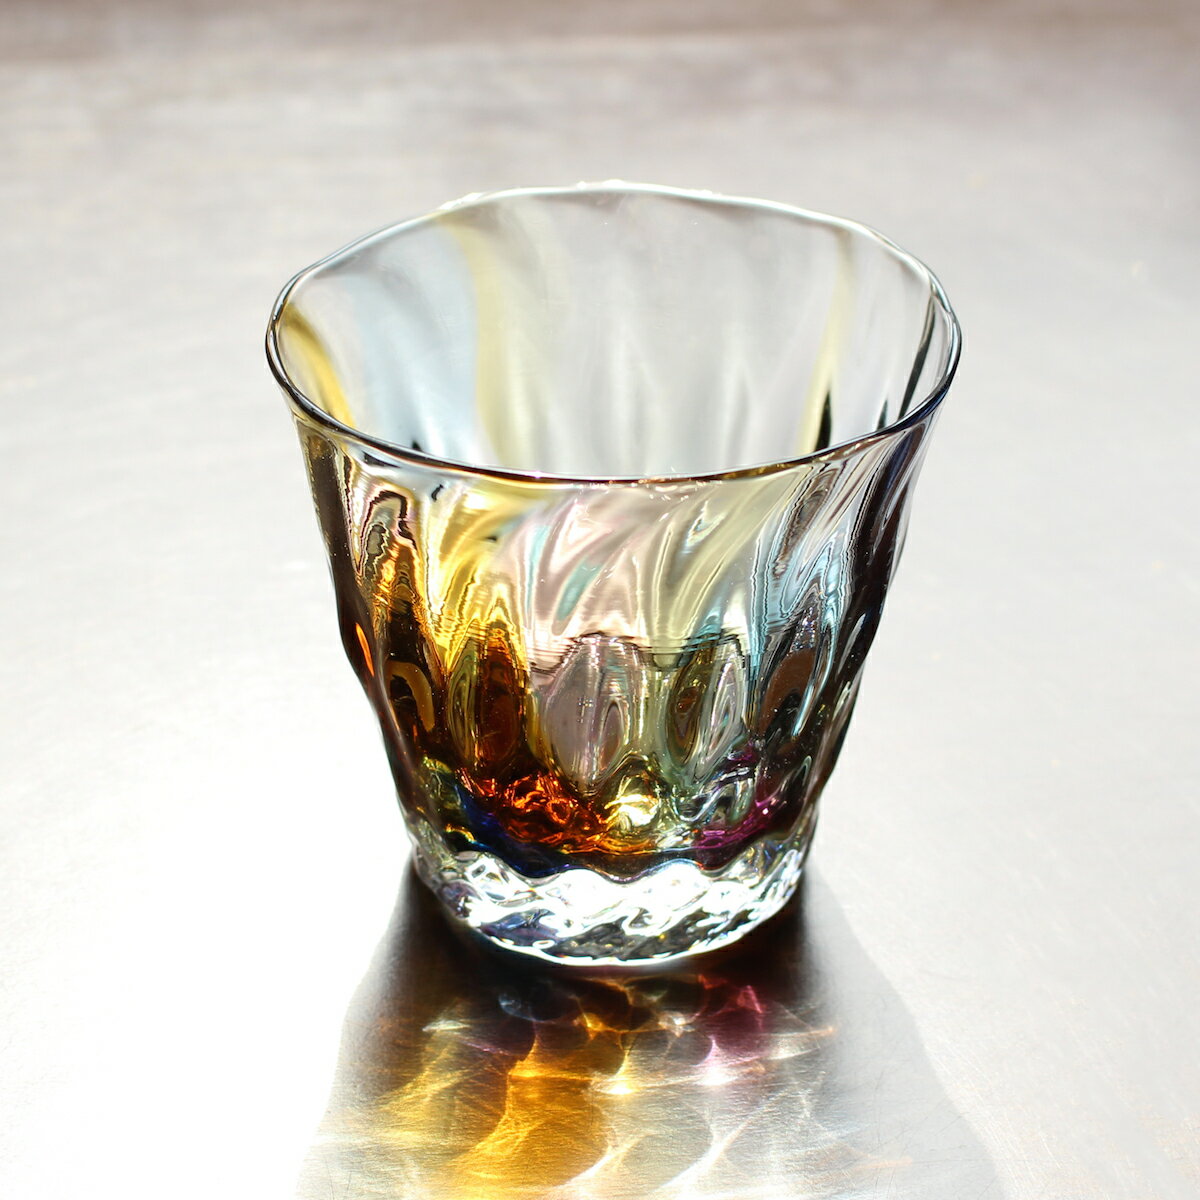 glass calicoの岩沢達さんによるハンドメイドのロックグラスです。アースカラーが織りなす透明感が美しく、自然の歪みに手仕事の温もりを感じます。テーブルに反射する色合いが素敵ですね♪